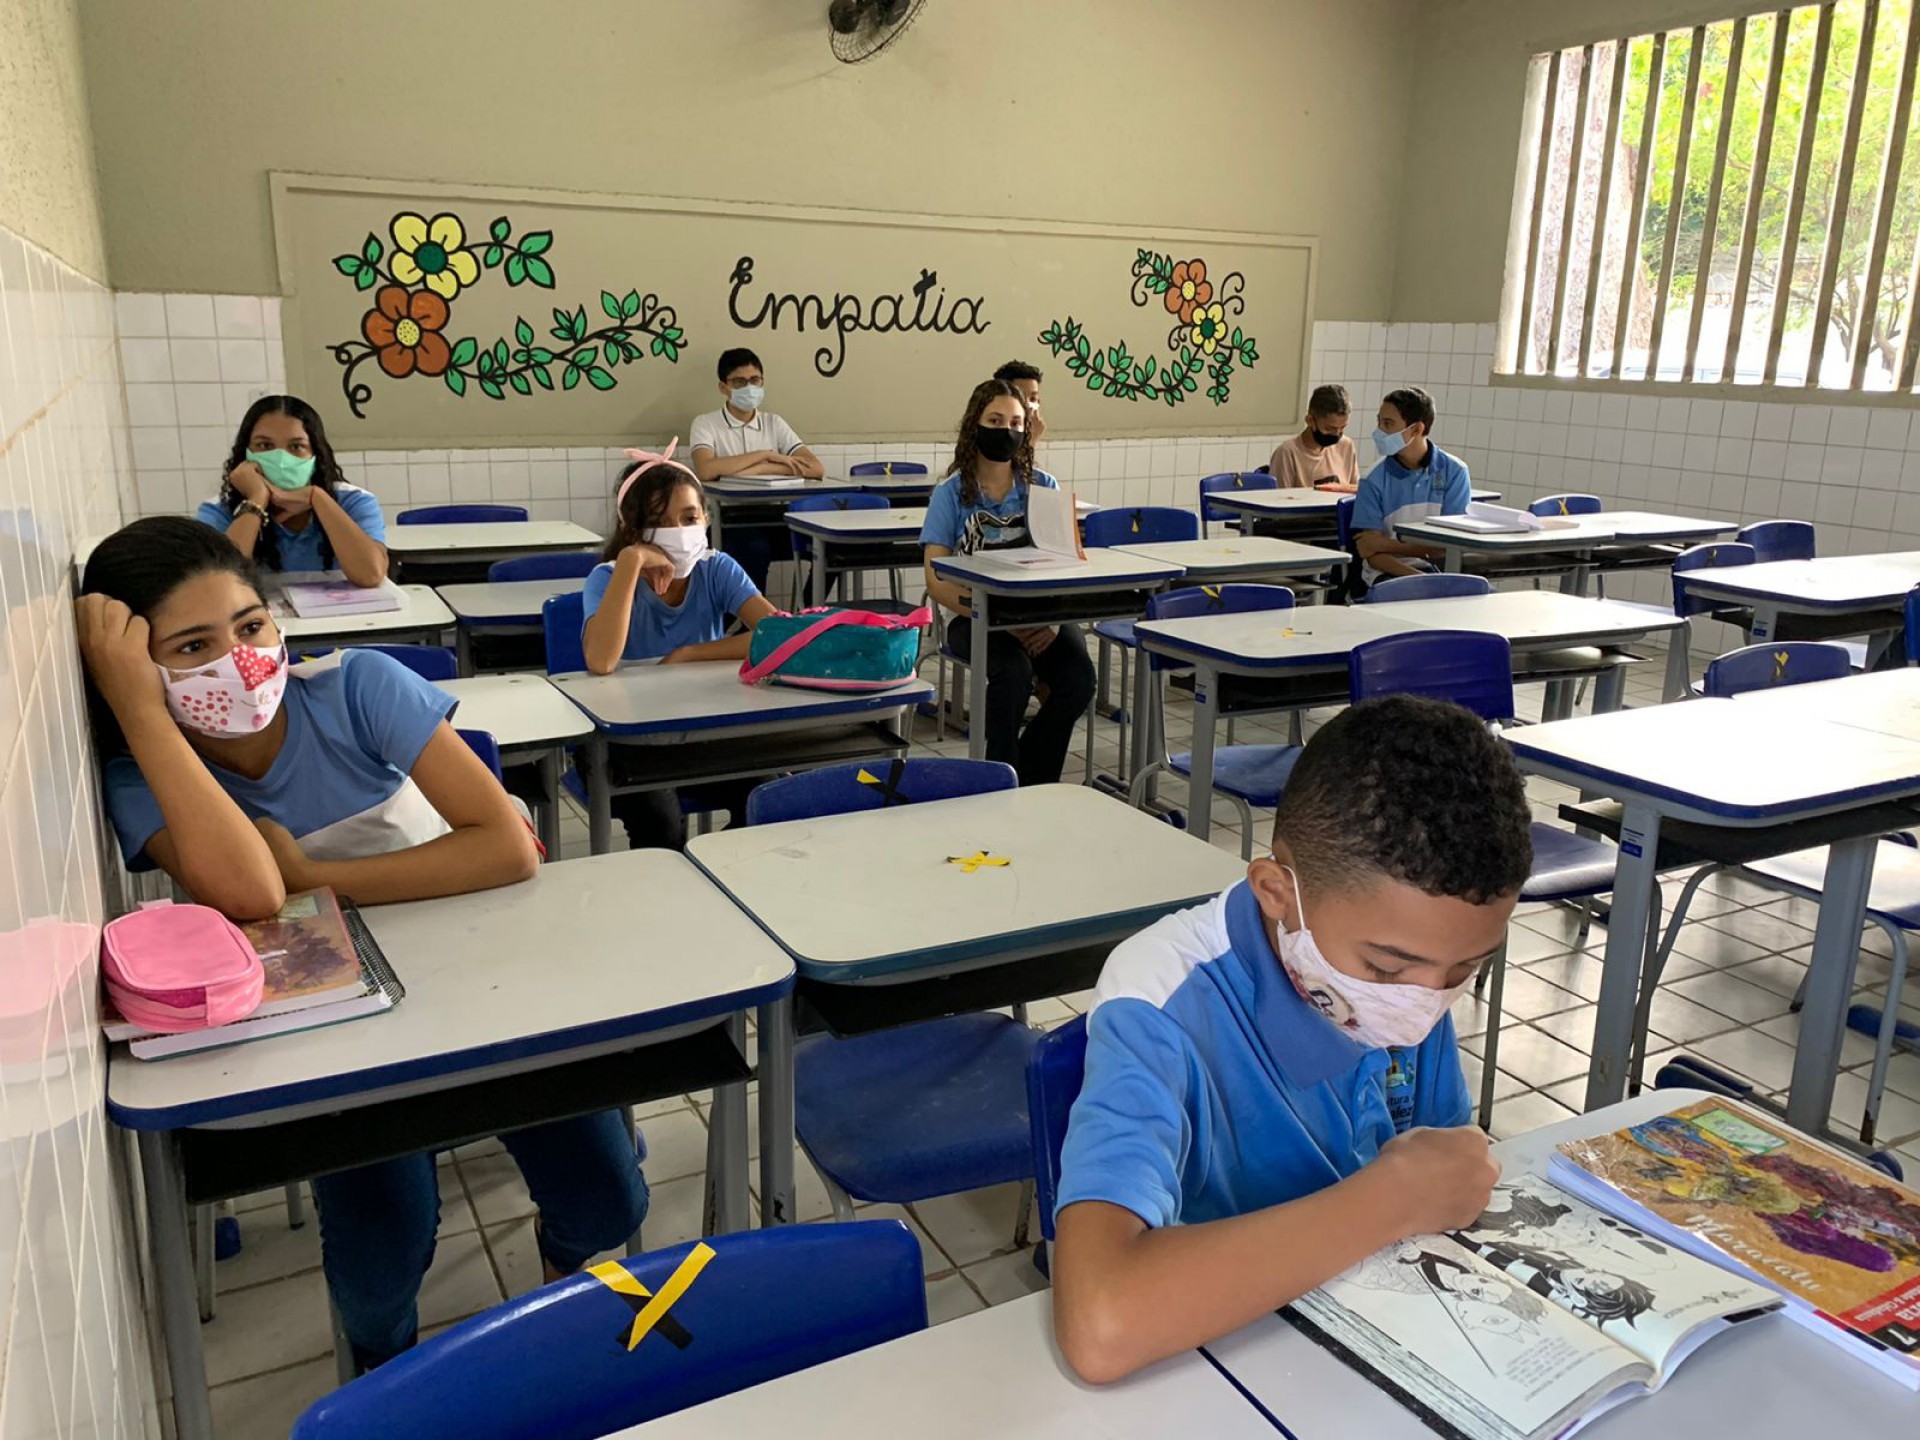 Retoma das aulas na Escola Municipal Demócrito Rocha, em Messejana (Foto: Gabriel Borges/O POVO)